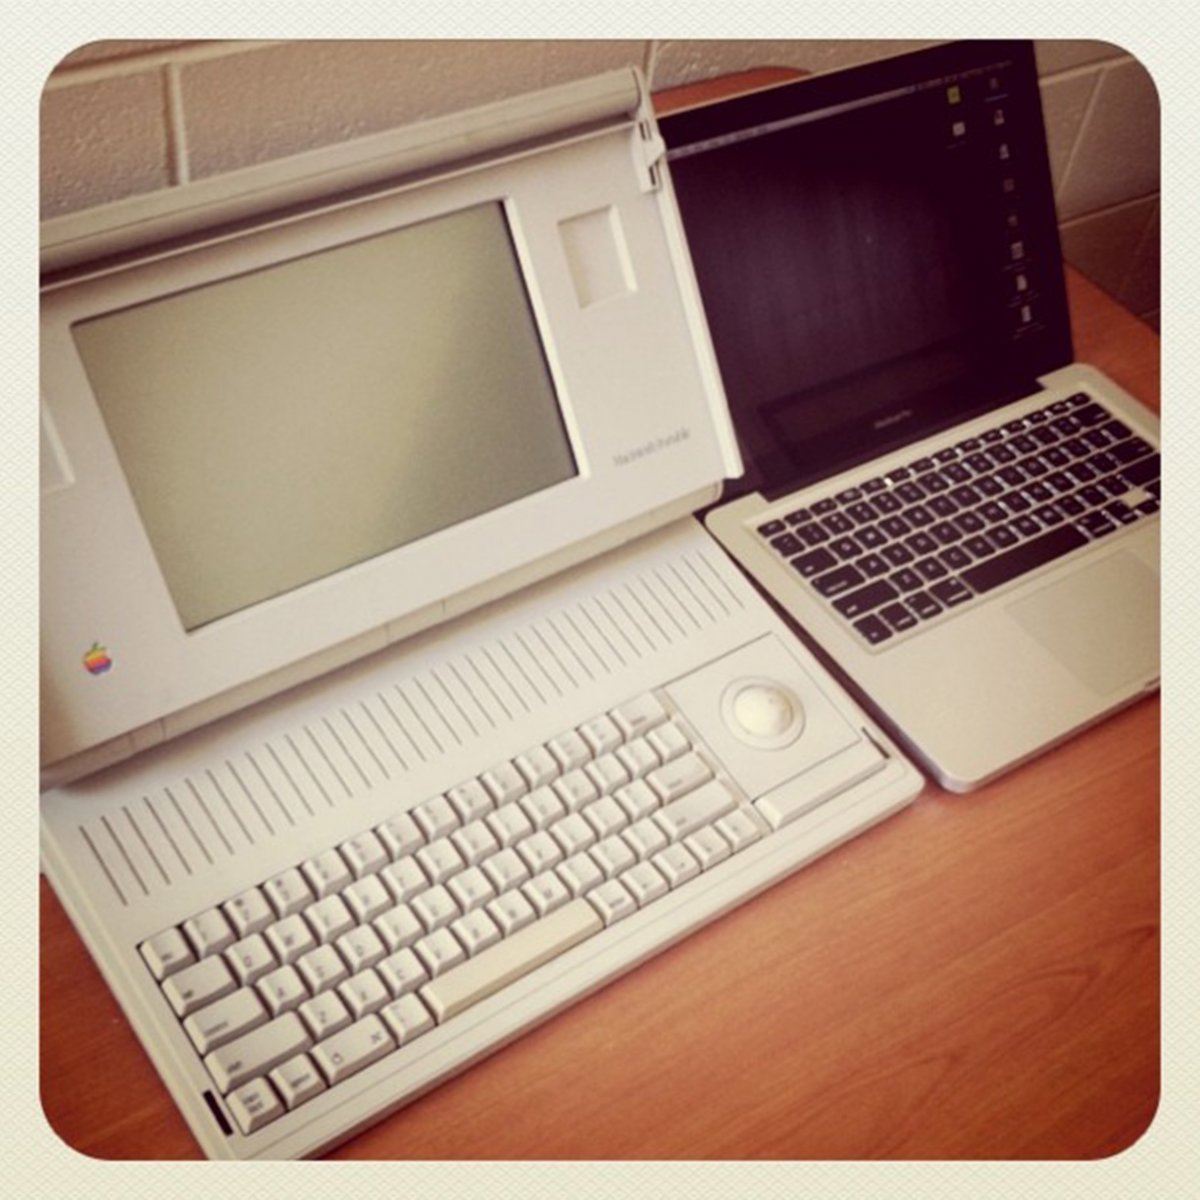 Macintosh Portable ra mắt năm 1991 là laptop đầu tiên của Apple. Kể từ sau này, mọi laptop thương hiệu “táo khuyết” đều mang thiết kế vỏ sò.